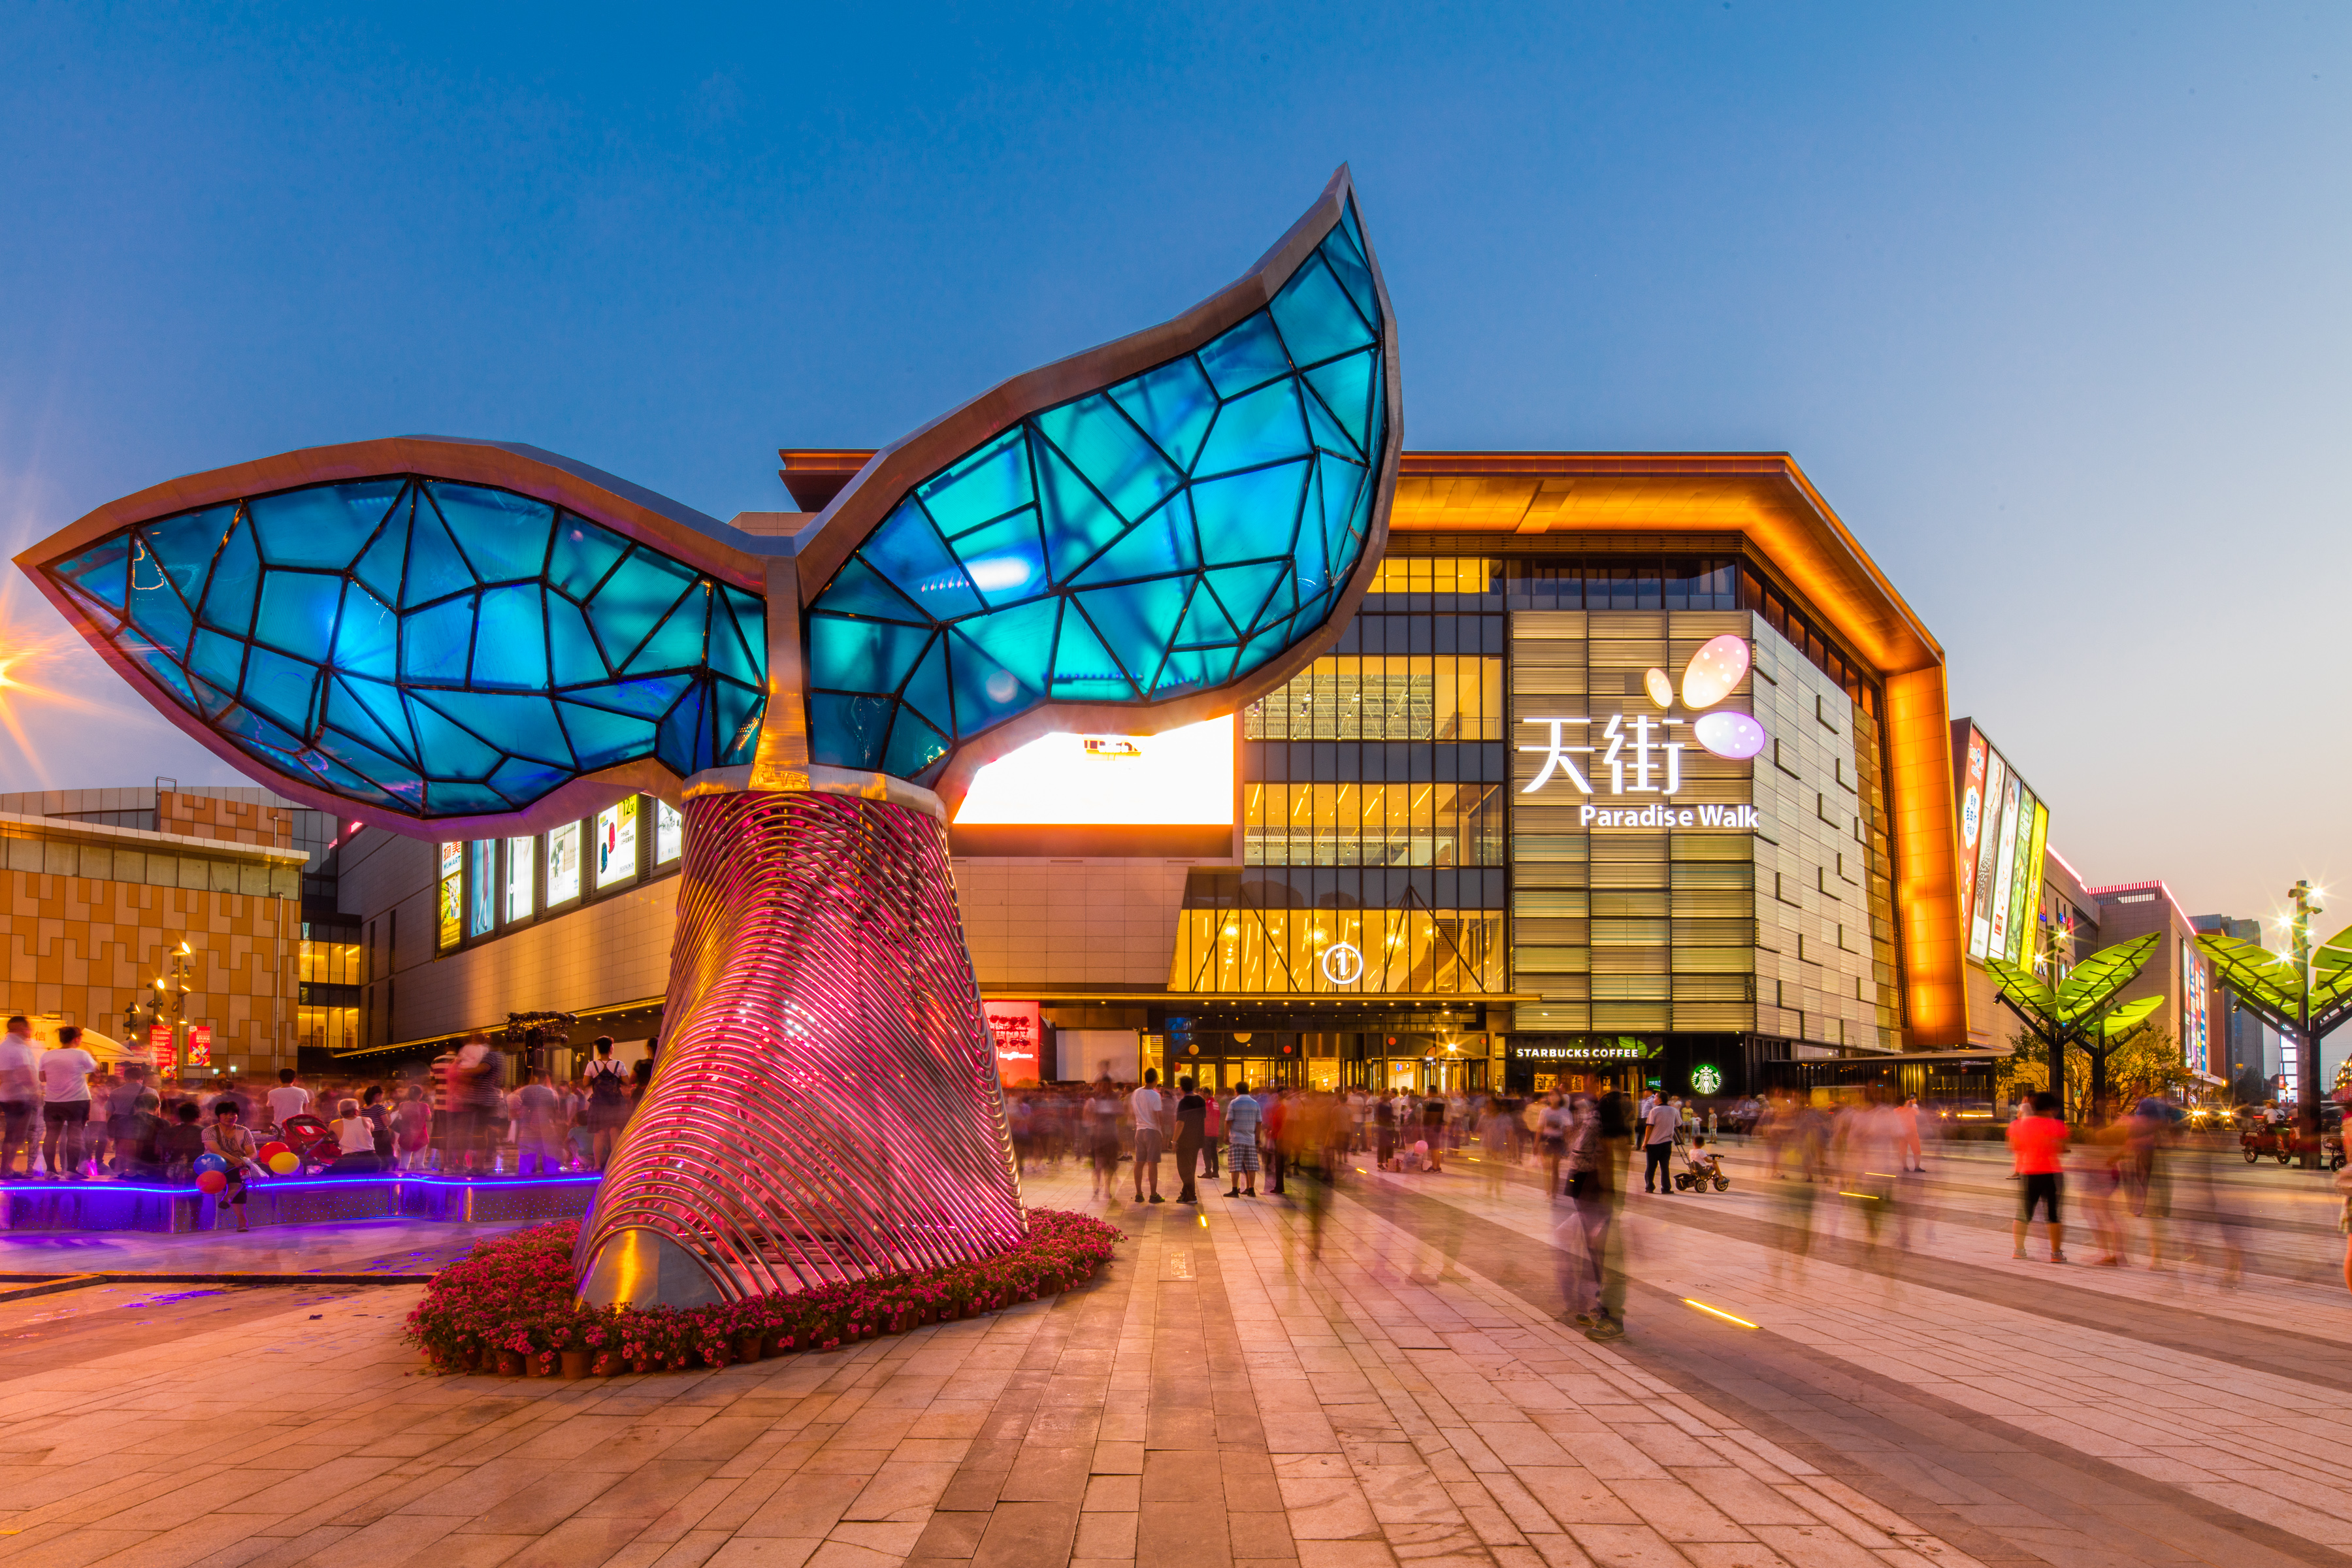 67北京龙湖大兴天街来自重庆的运营玩家龙湖商业,继2014年底北京长